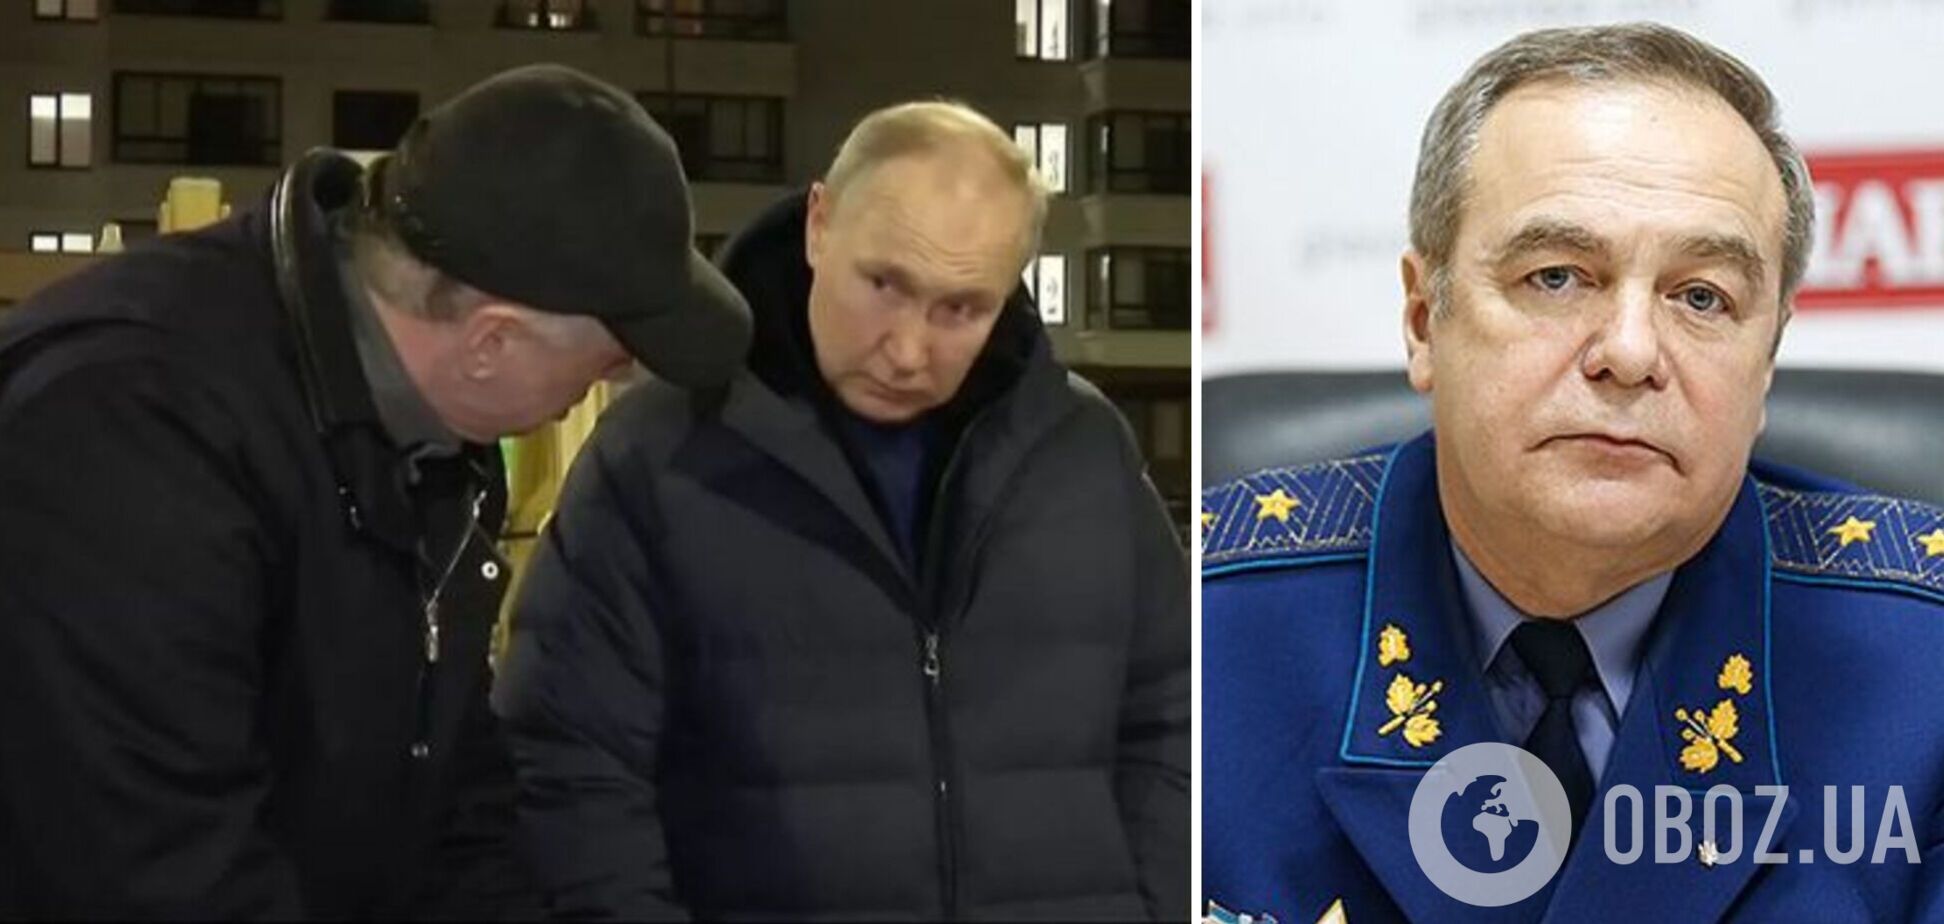 Путин в Мариуполе сжег мосты: генерал обратил внимание на странности 'визита' диктатора